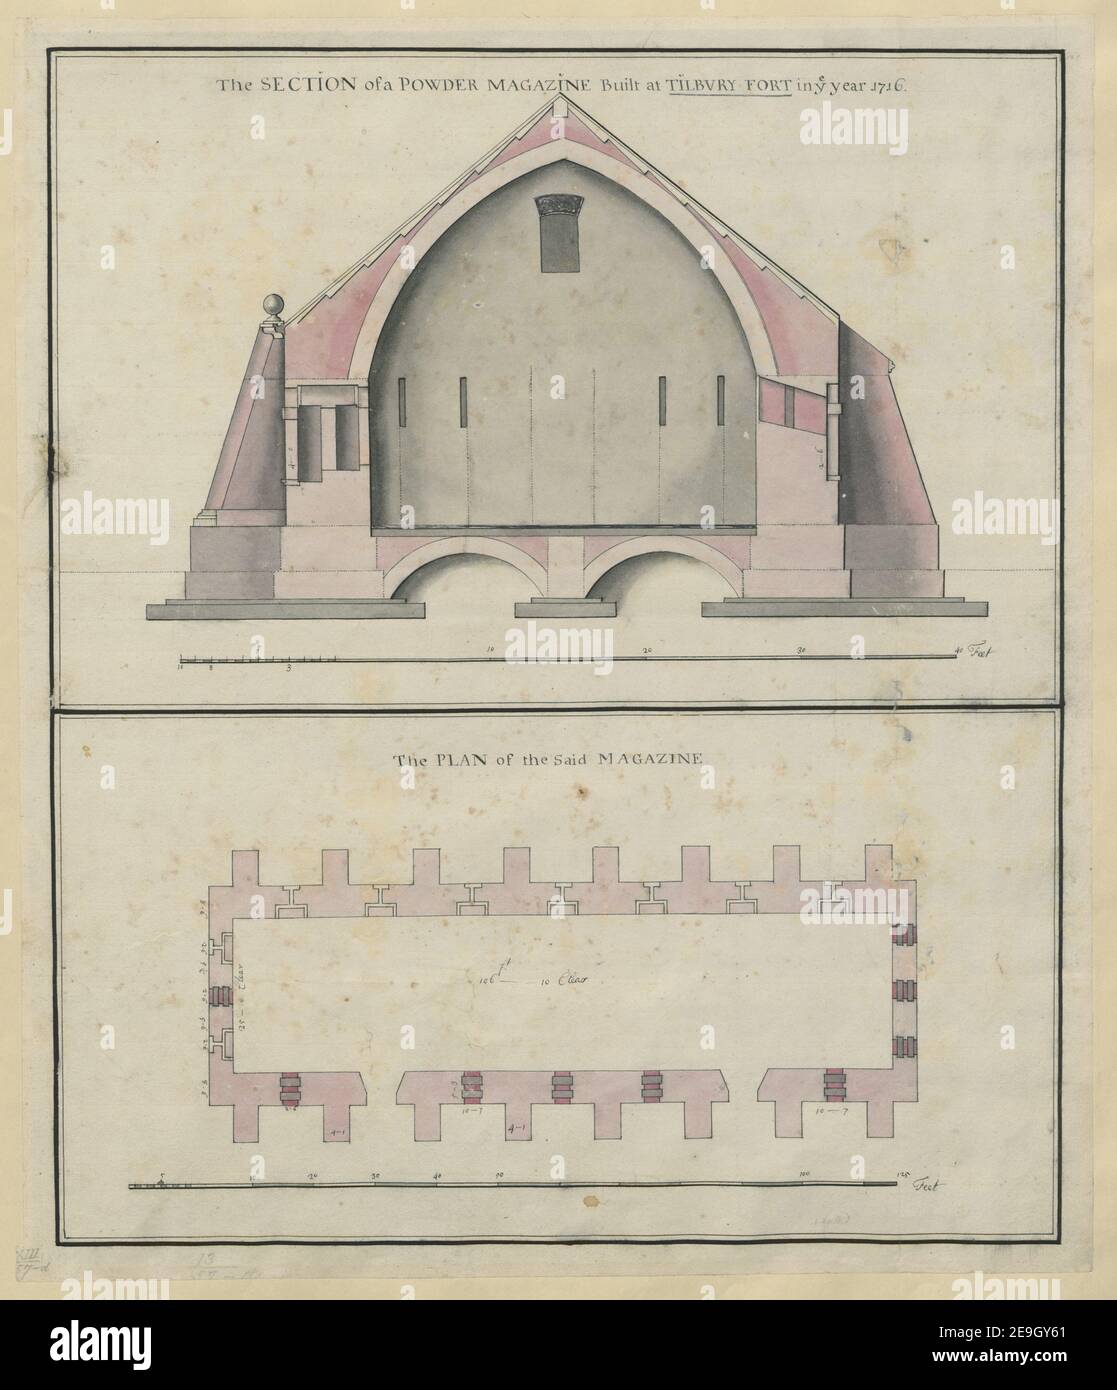 Ein farbiger Plan eines Pulvermagazins, gebaut in Tilbury Fort, 1716, einer der beiden an der Landseite, gezeichnet auf einer Skala von 10 Fuß zu einem Zoll mit einem Querabschnitt, auf einer Skala von 4 Fuß zu einem Zoll. Karteninformation: Titel: Ein farbiger Plan eines Pulvermagazins, gebaut in Tilbury Fort, 1716, einer der beiden auf der Landseite; gezeichnet auf einer Skala von 10 Fuß bis zu einem Zoll; mit einem Querschnitt, auf einer Skala von 4 Fuß bis zu einem Zoll. 13,57.d. Datum der Veröffentlichung: 1716. Art des Artikels: Ms. 1 f. 7 Zoll x 1 f. 4 Zoll Ehemaliger Besitzer: George III, König von Grossbrit Stockfoto